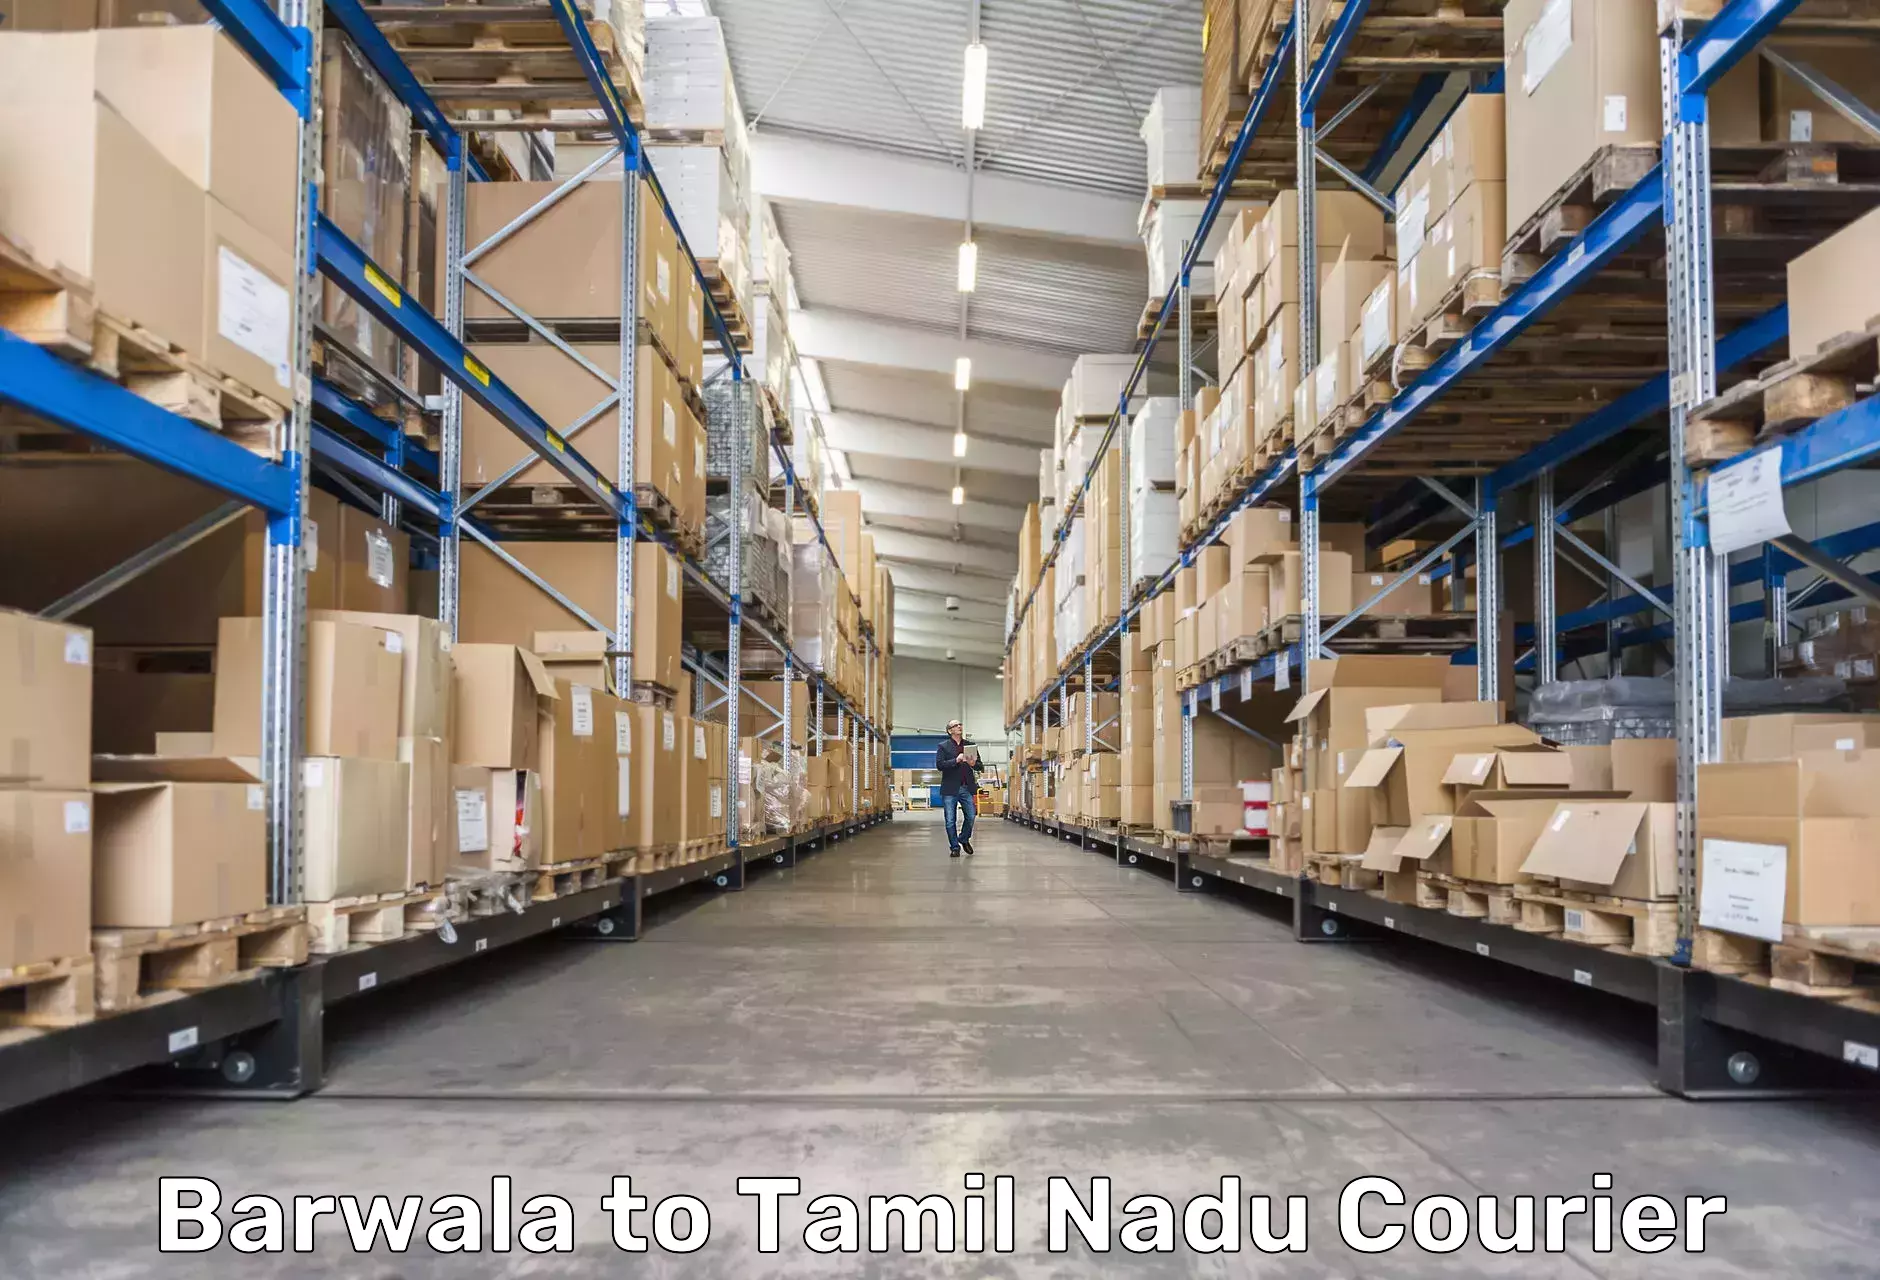 Global logistics network Barwala to Vilathikulam